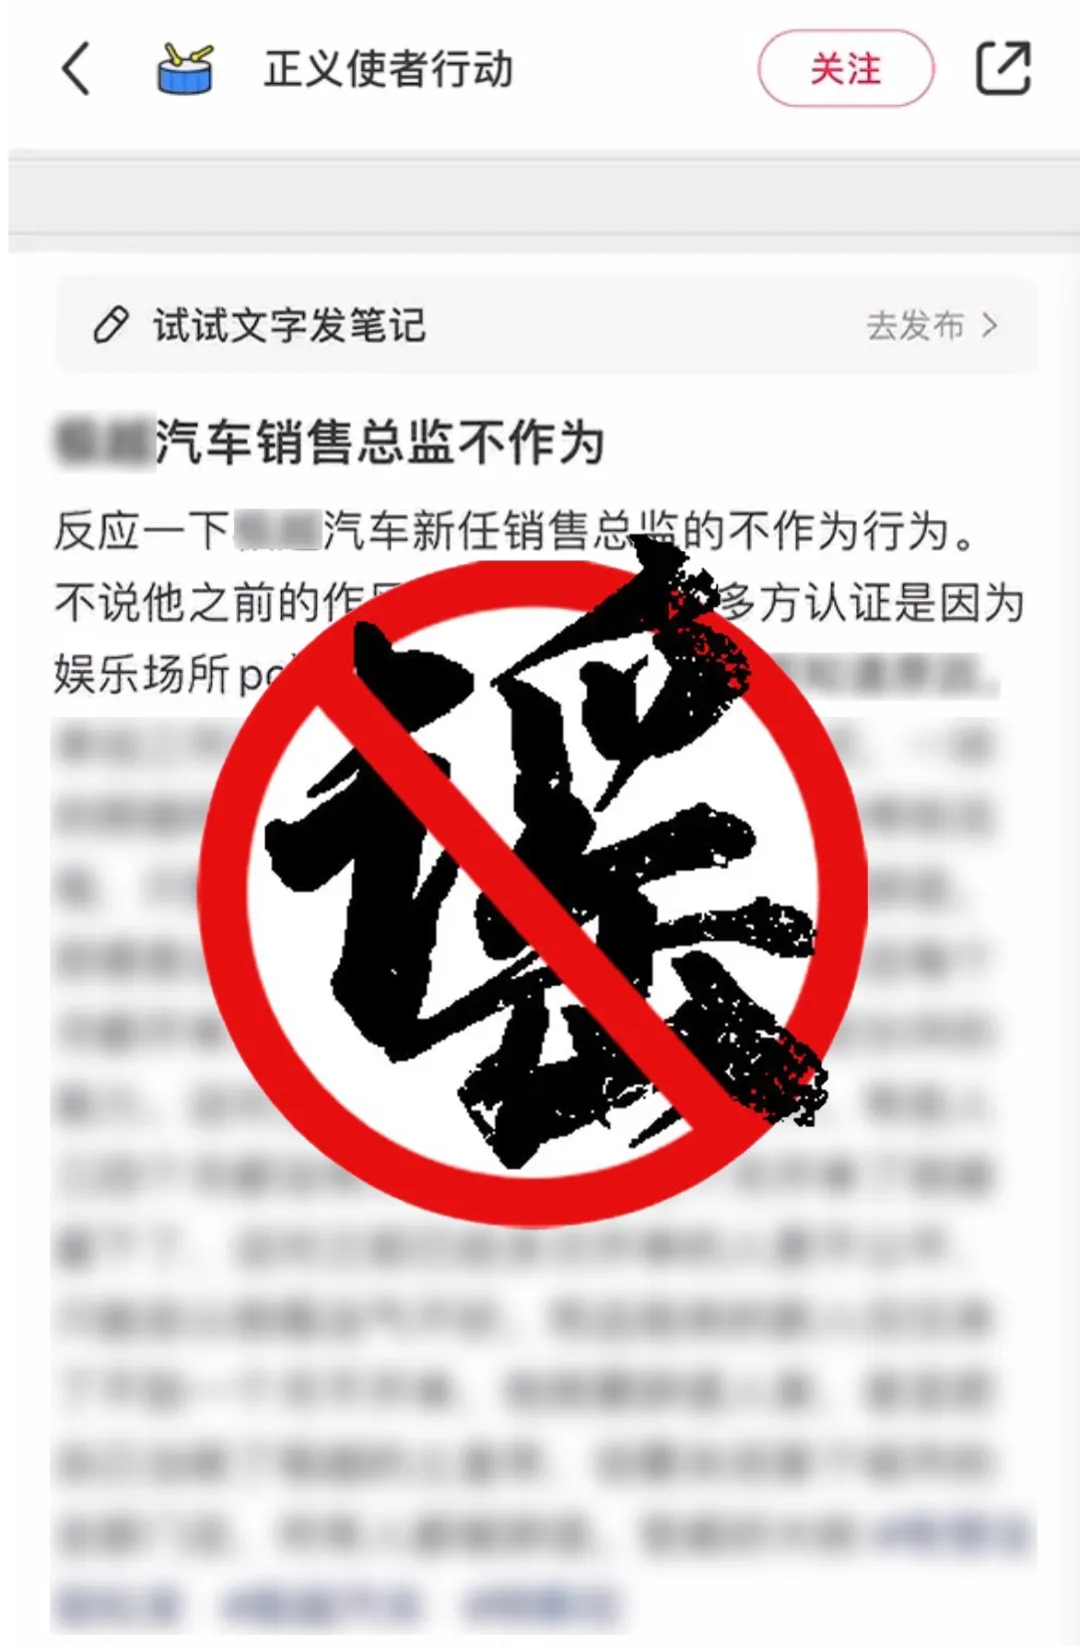 蹭流量、博眼球、诽谤他人当心违法！上海警方公布三起打击谣言典型案例